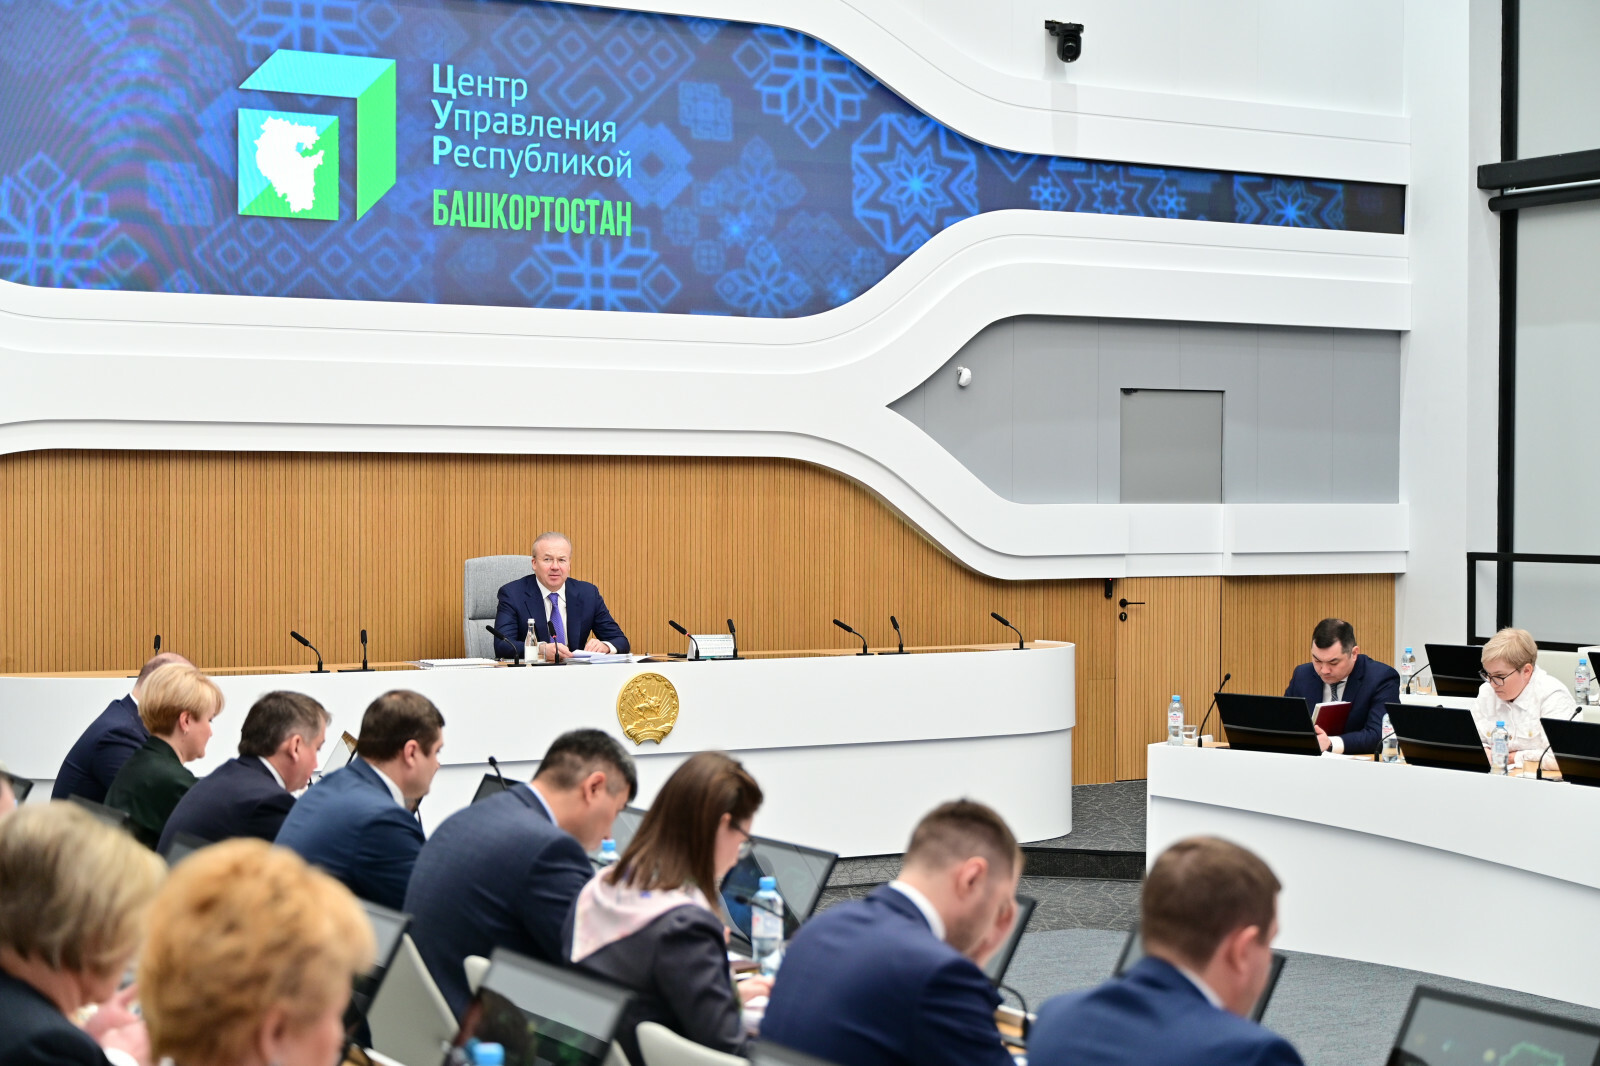 Башкортостан вошел в ТОП-10 рейтинга цифровой трансформации регионов